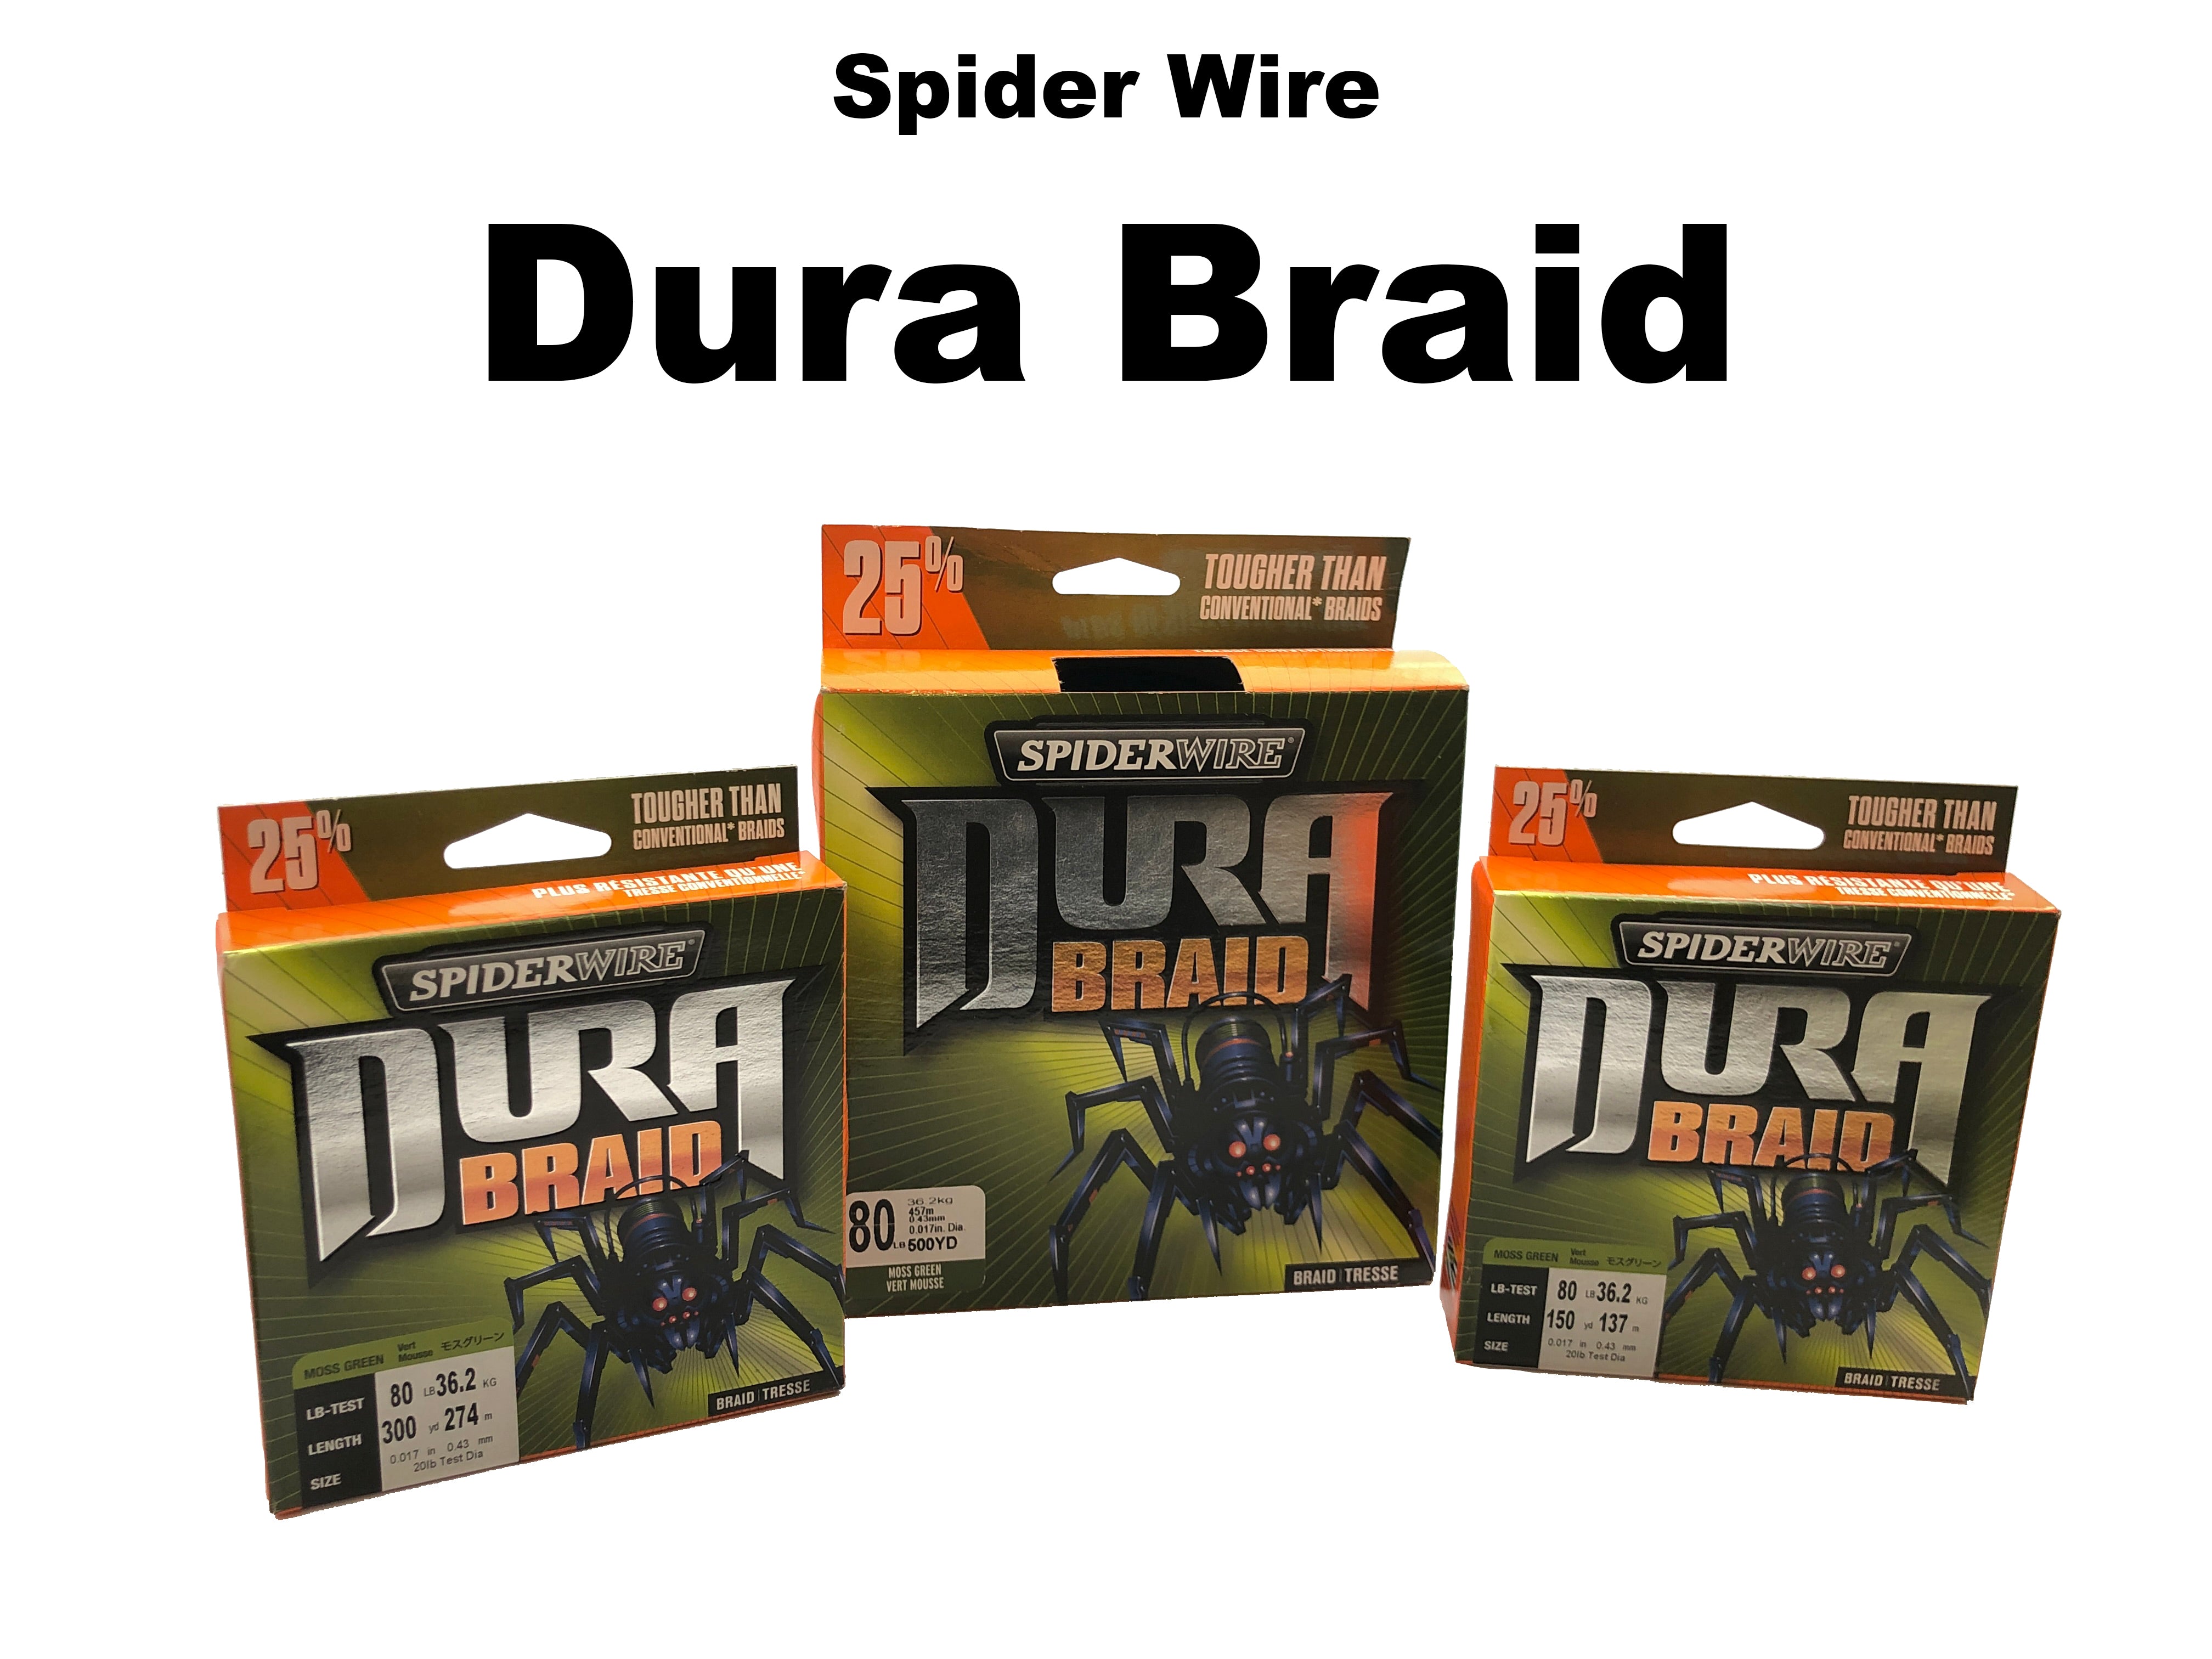 Spiderwire DuraBraid Braided Line - American Legacy Fishing, G